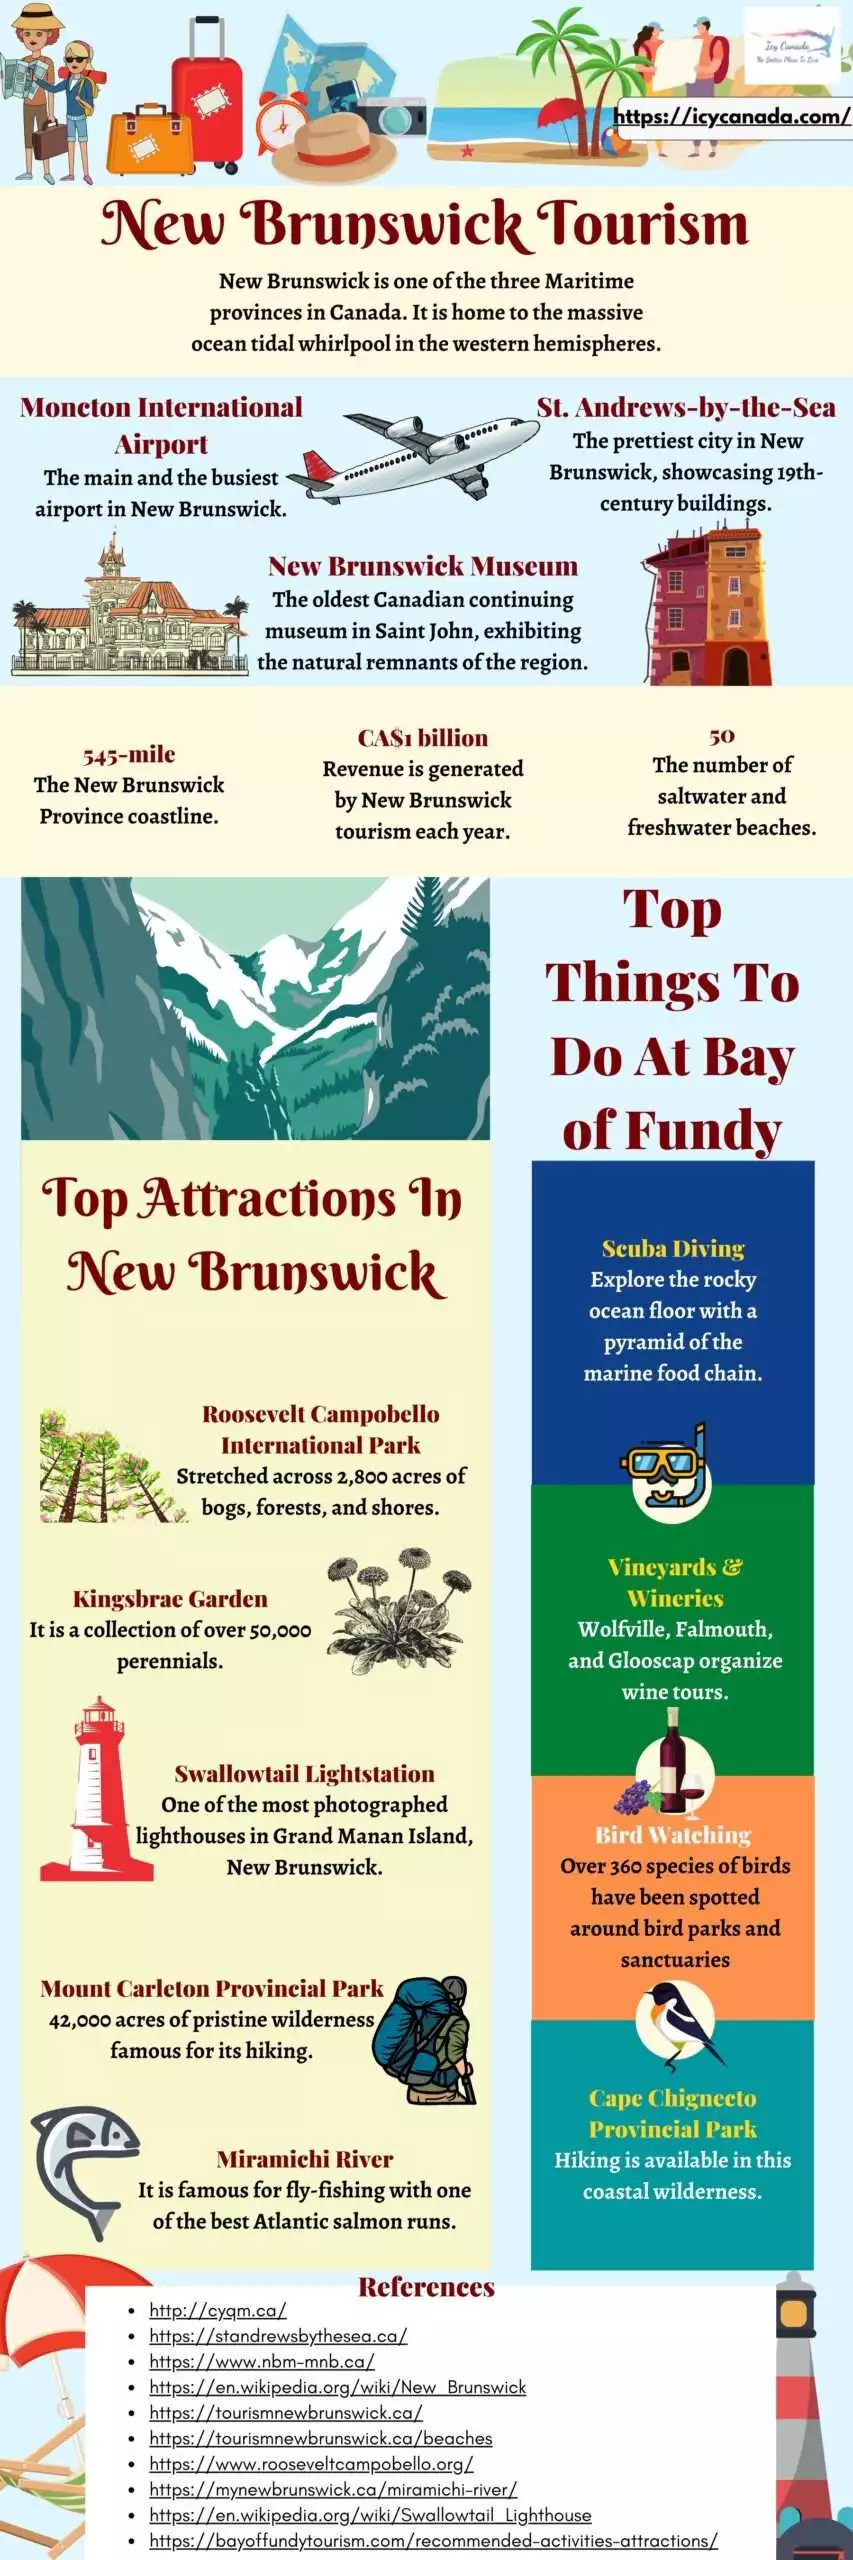 All About New Brunswick Tourism